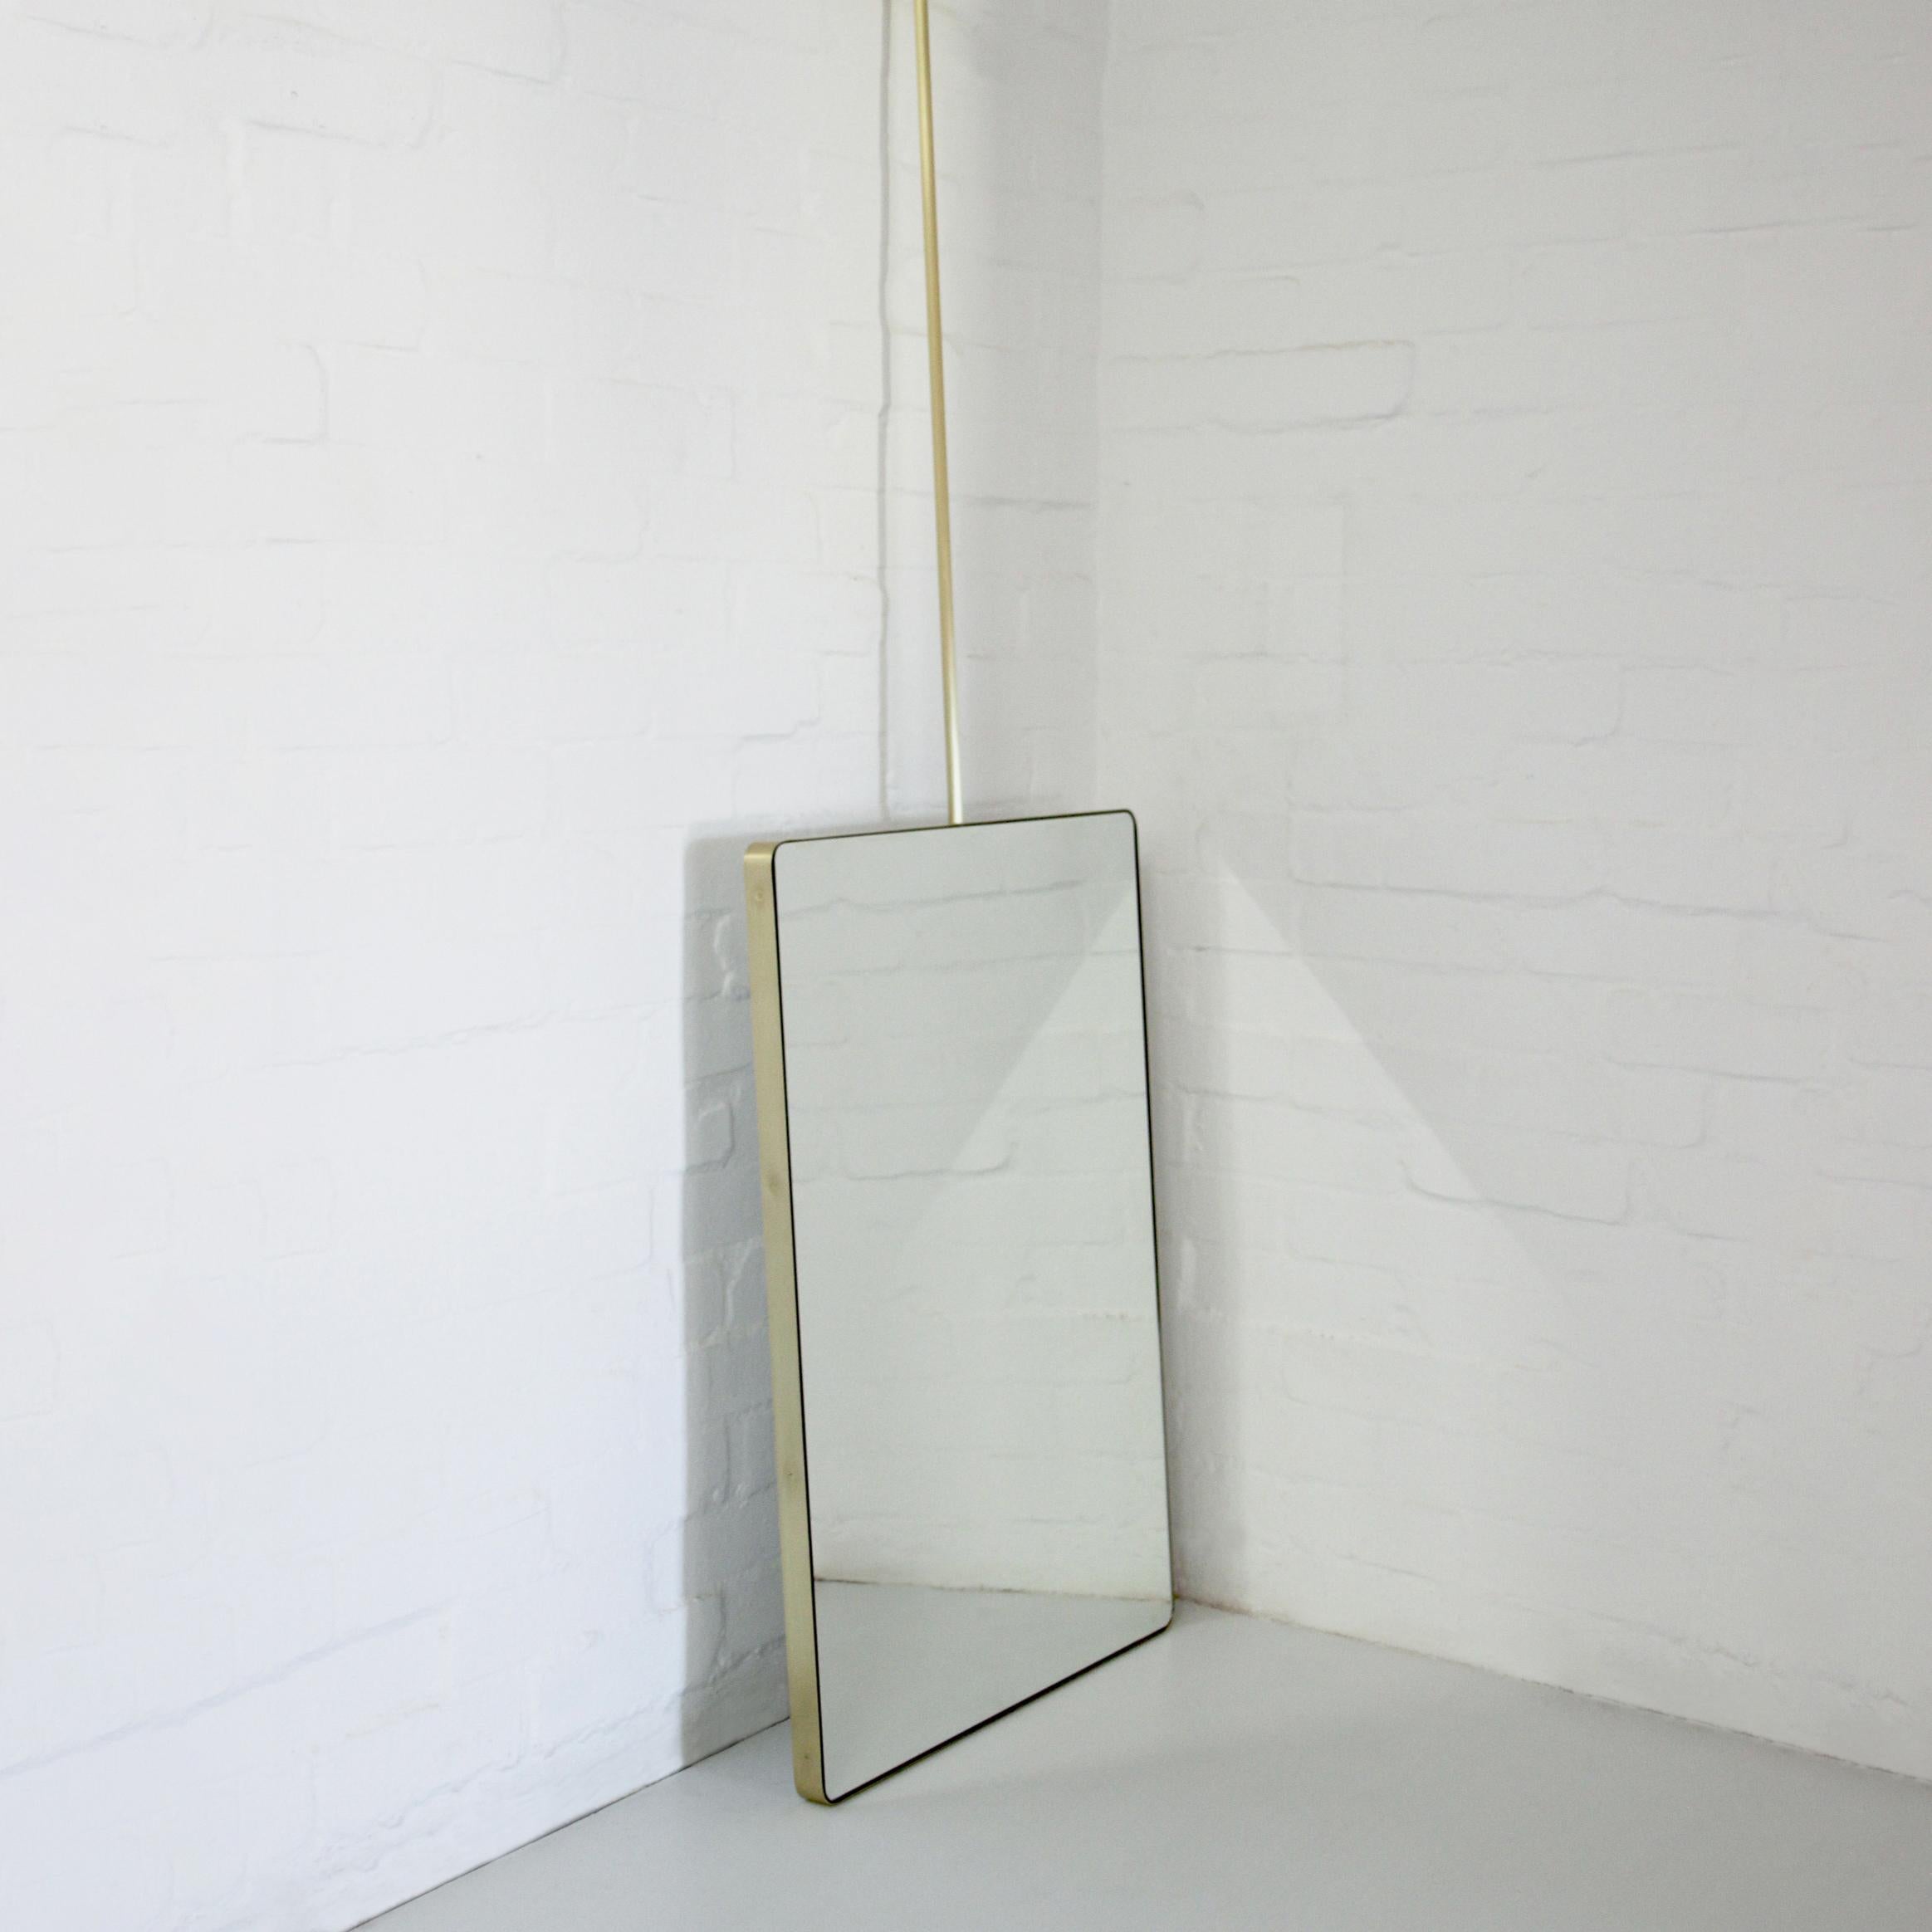 Miroir rectangulaire unique et moderne suspendu au plafond, doté d'un cadre élégant en laiton brossé massif et d'un dos lisse en aluminium blanc.

559mm (22